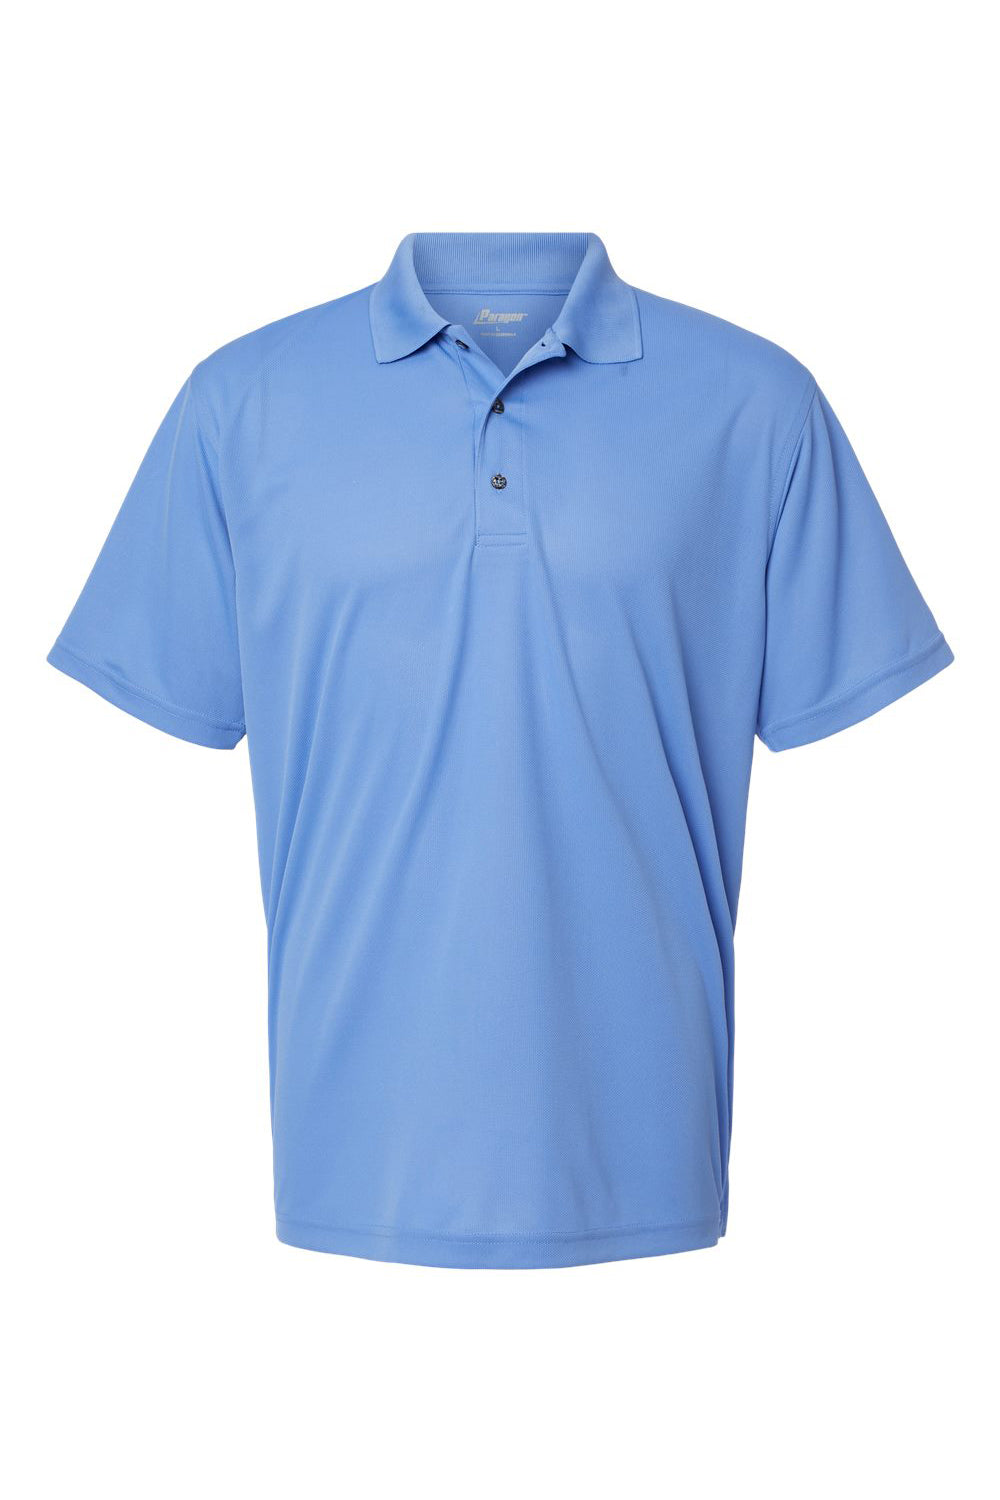 Paragon 100 Mens Saratoga Performance Mini Mesh Short Sleeve Polo Shirt Bimini Blue Flat Front